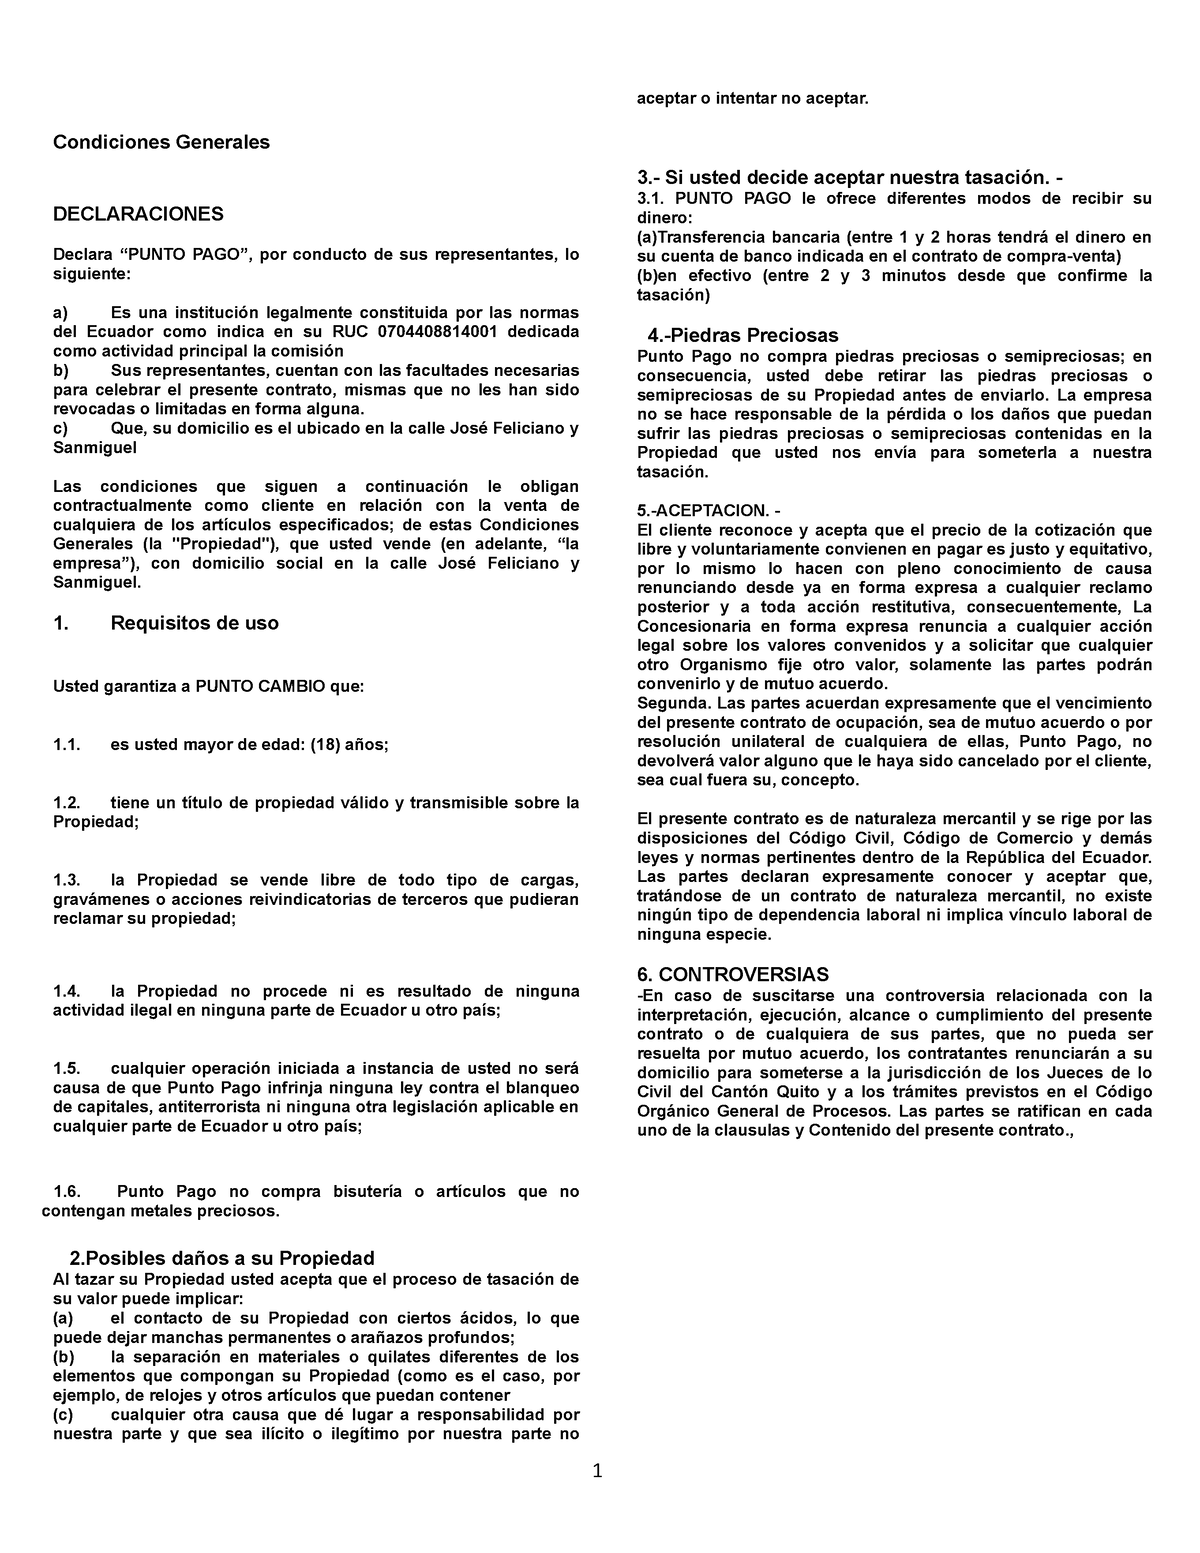 Ejemplo De Contratos Civil Condiciones Generales Declaraciones Declara “punto Pago” Por 5359